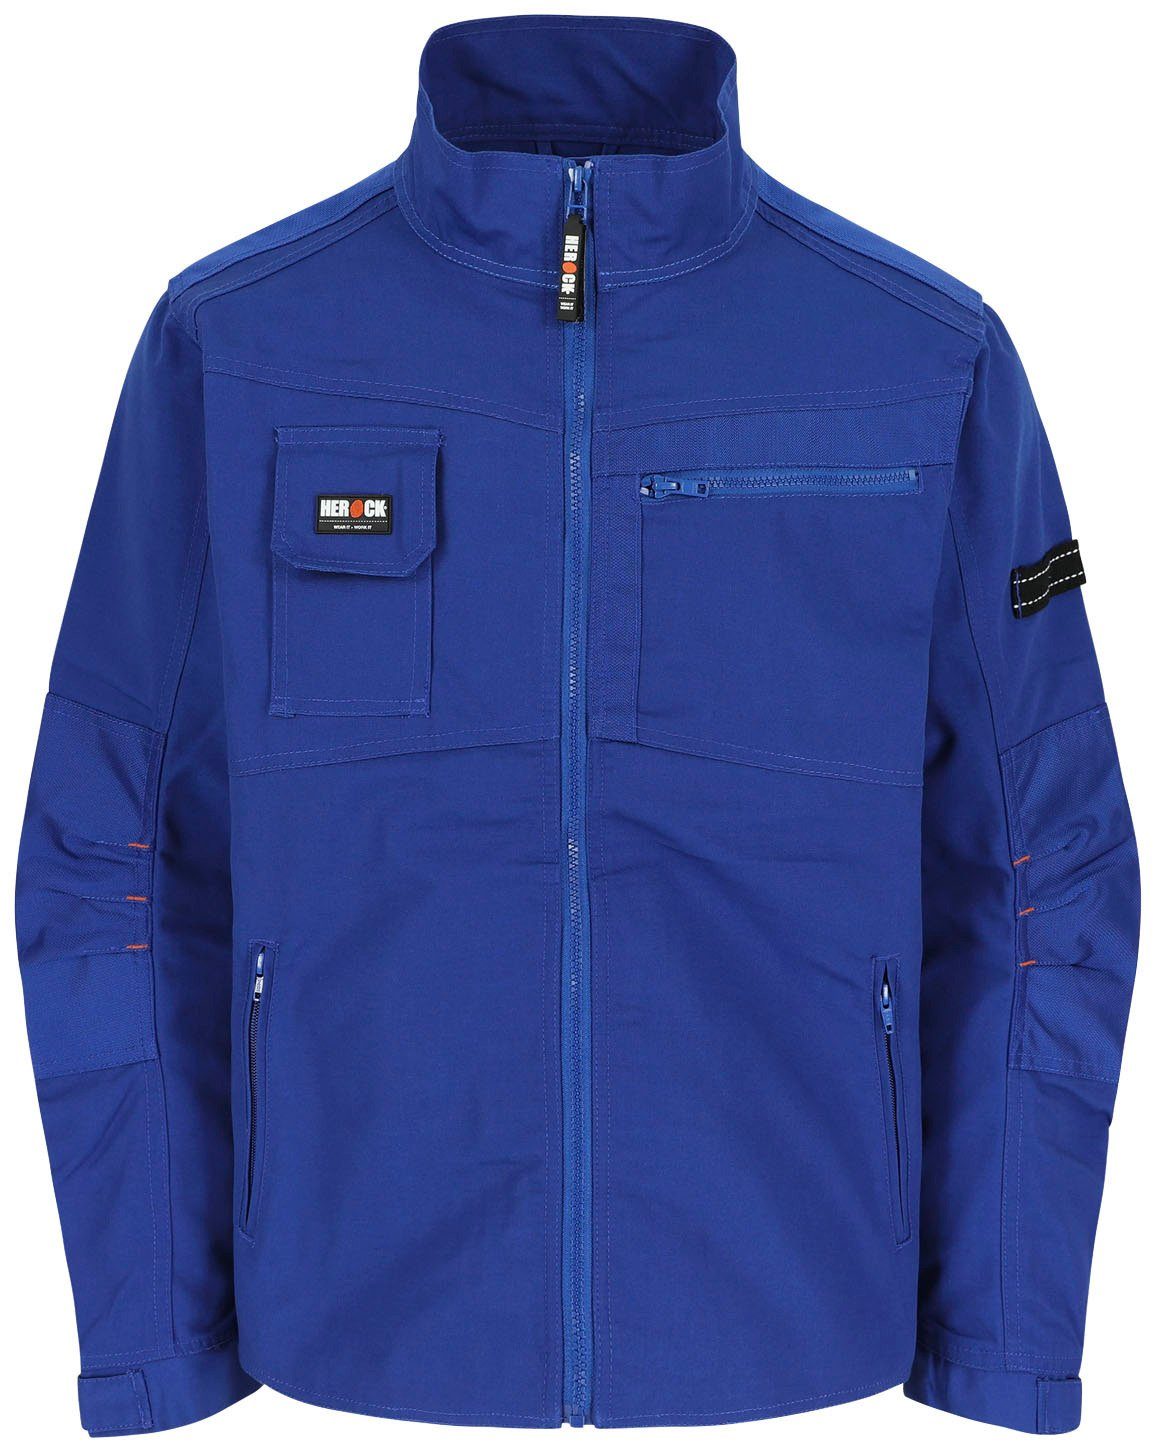 Taschen verstellbare - Bündchen Arbeitsjacke - robust blau Jacke Wasserabweisend Herock - 7 Anzar